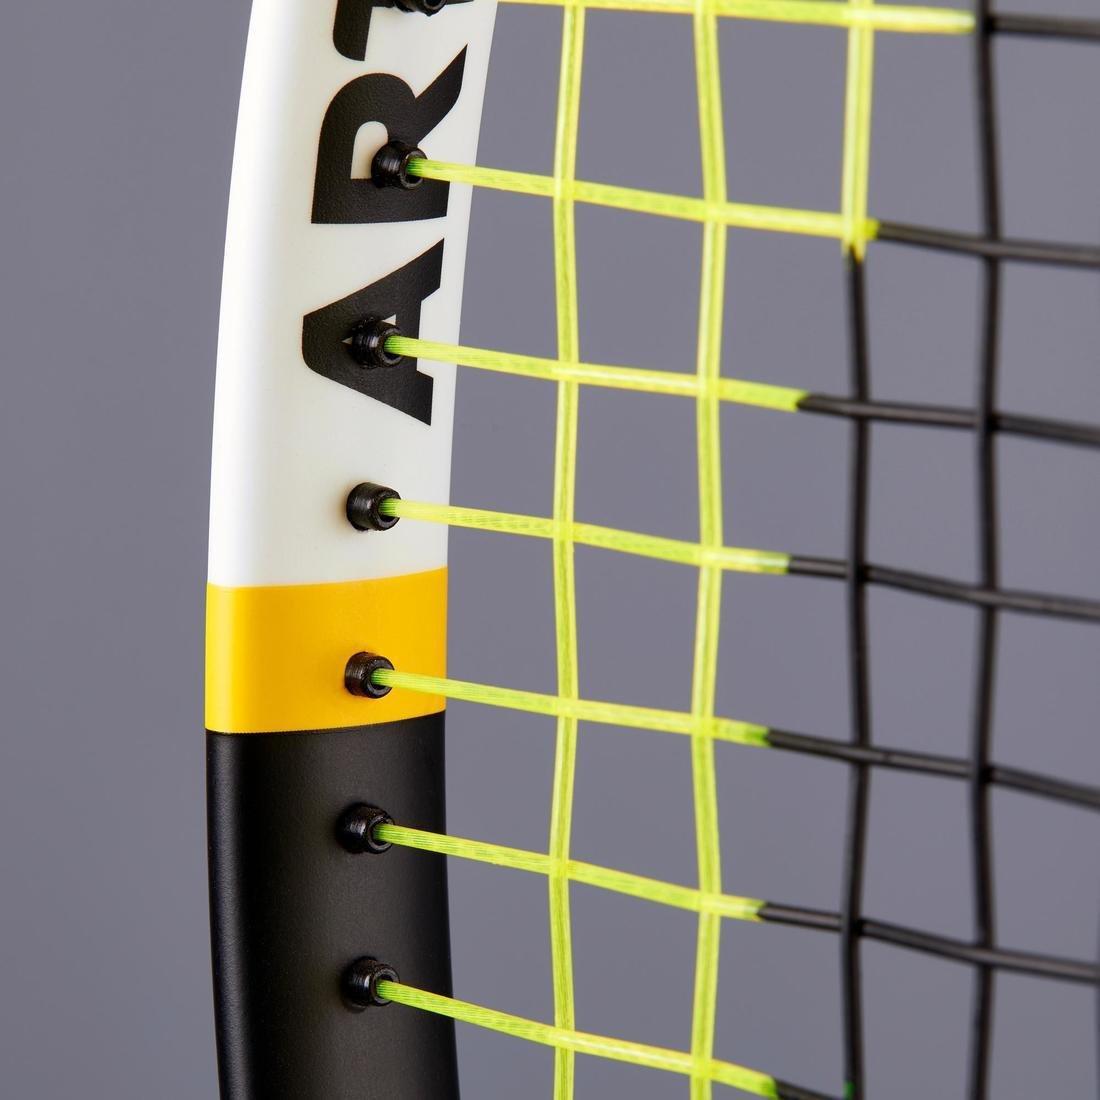 ARTENGO - Tr530 Kids Tennis Racket - Yellow